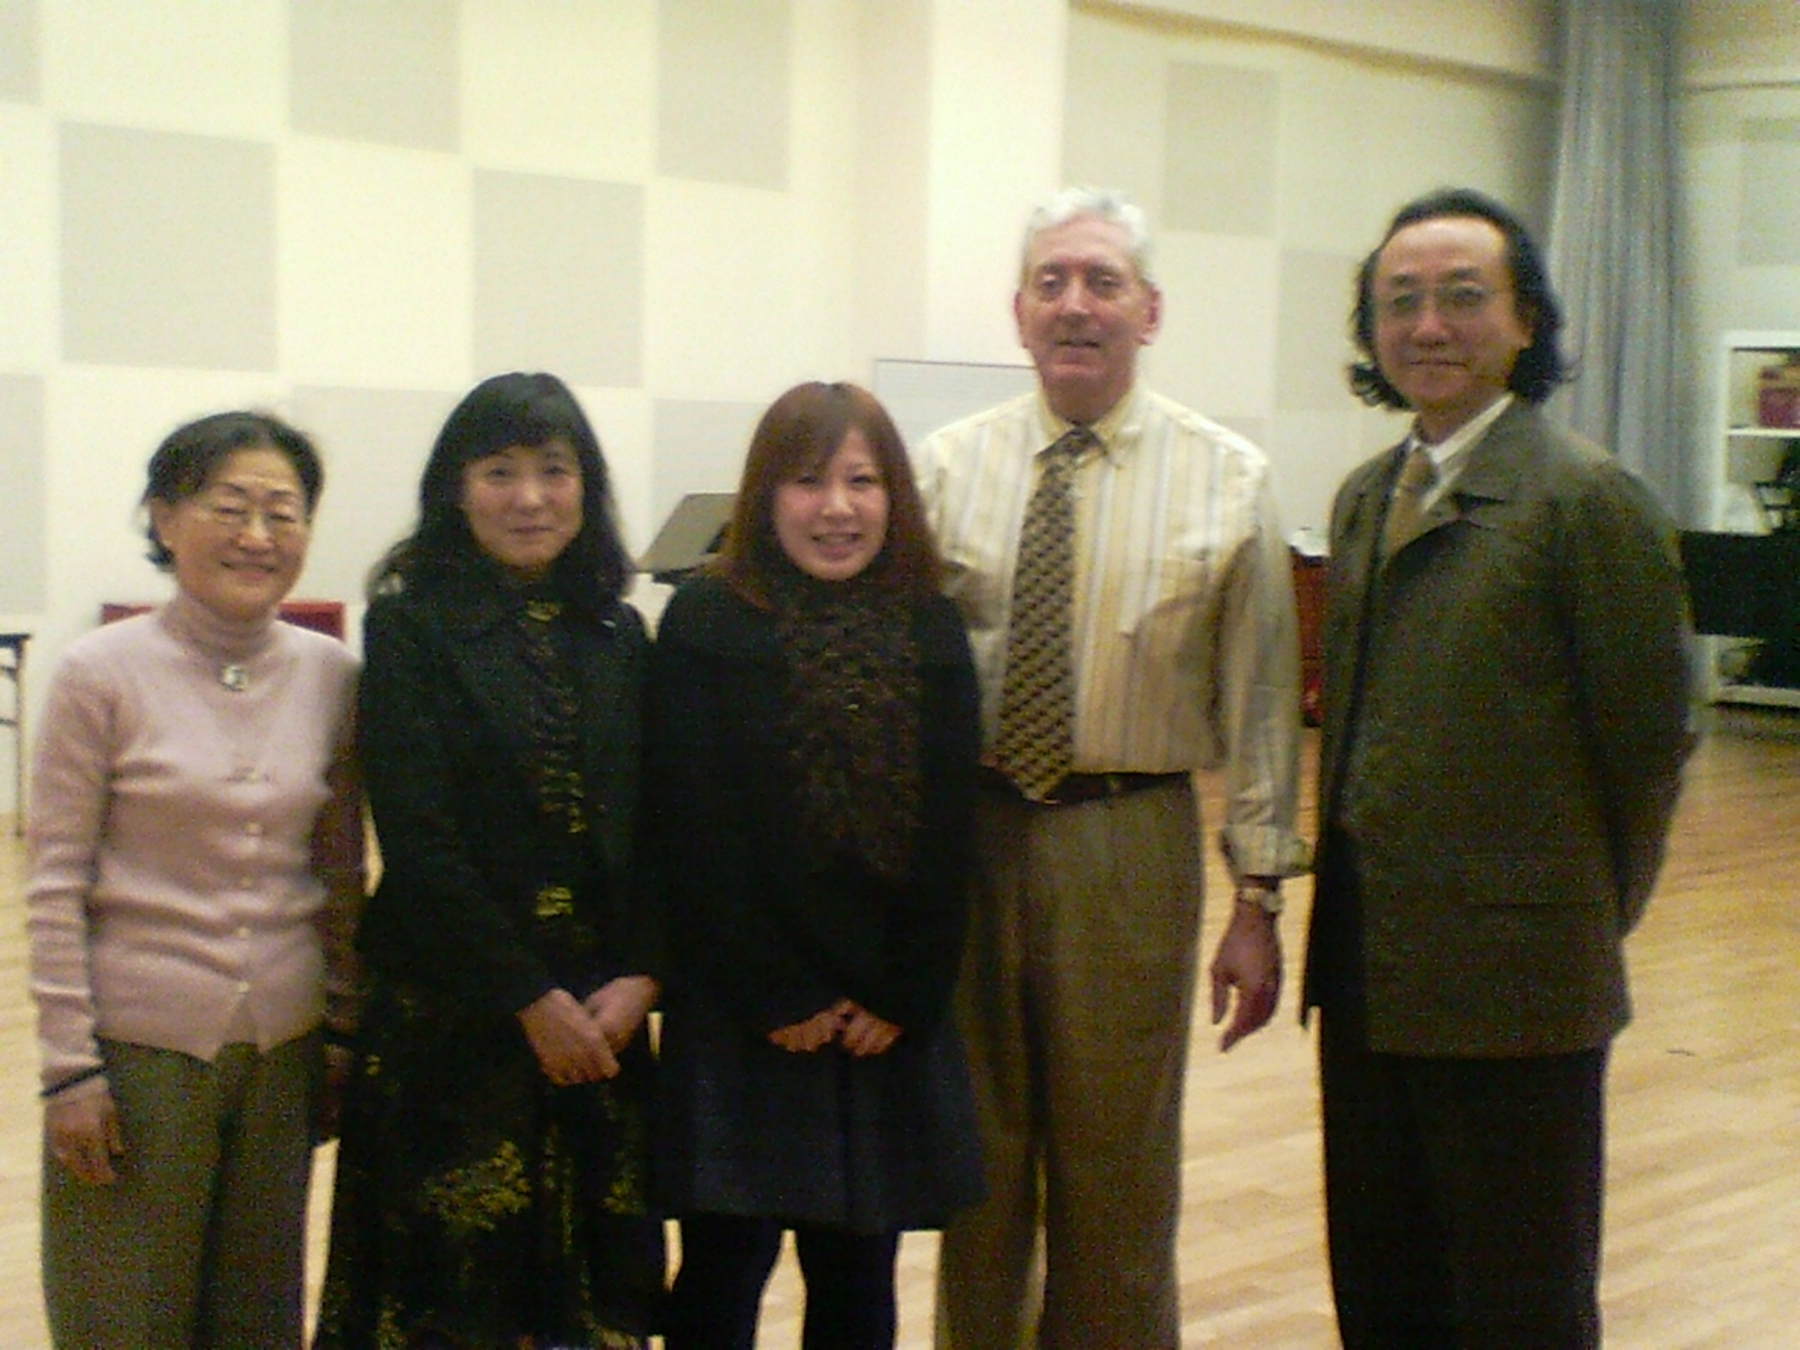 (L-R) Fumiko Iishi, Yashio Sudo, Akane (alumnus), Bill, Kaz